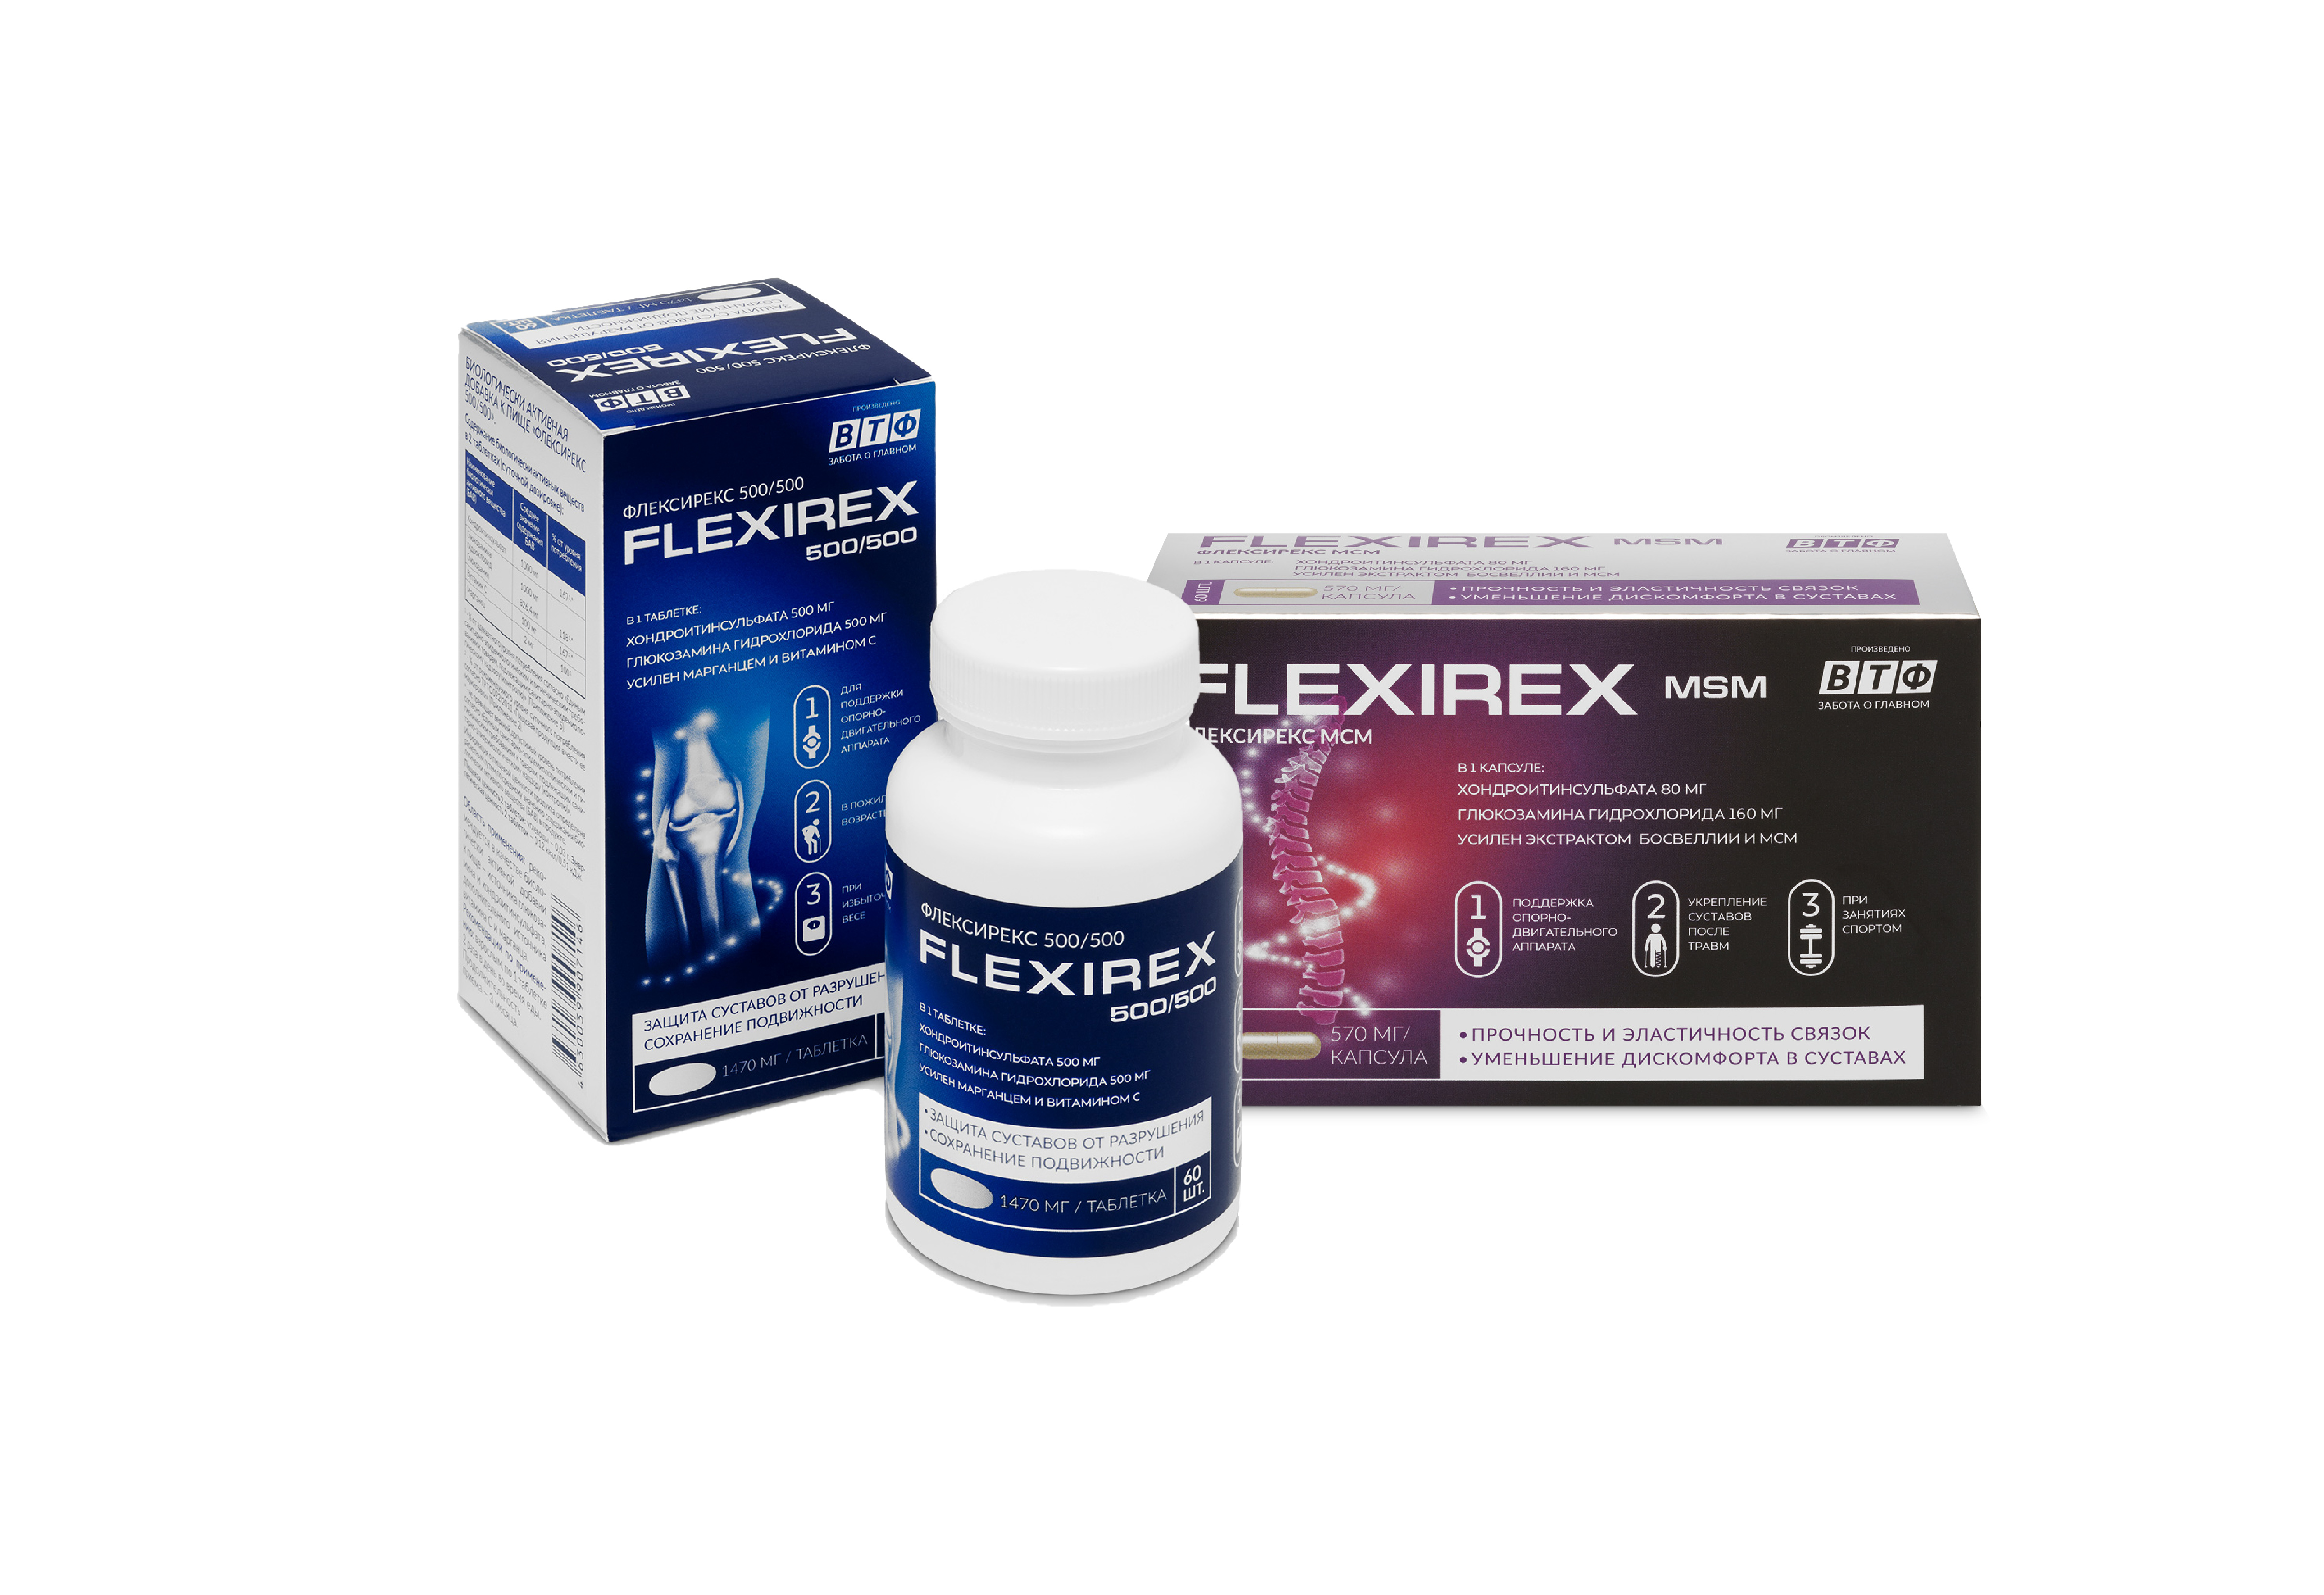 Flexirex